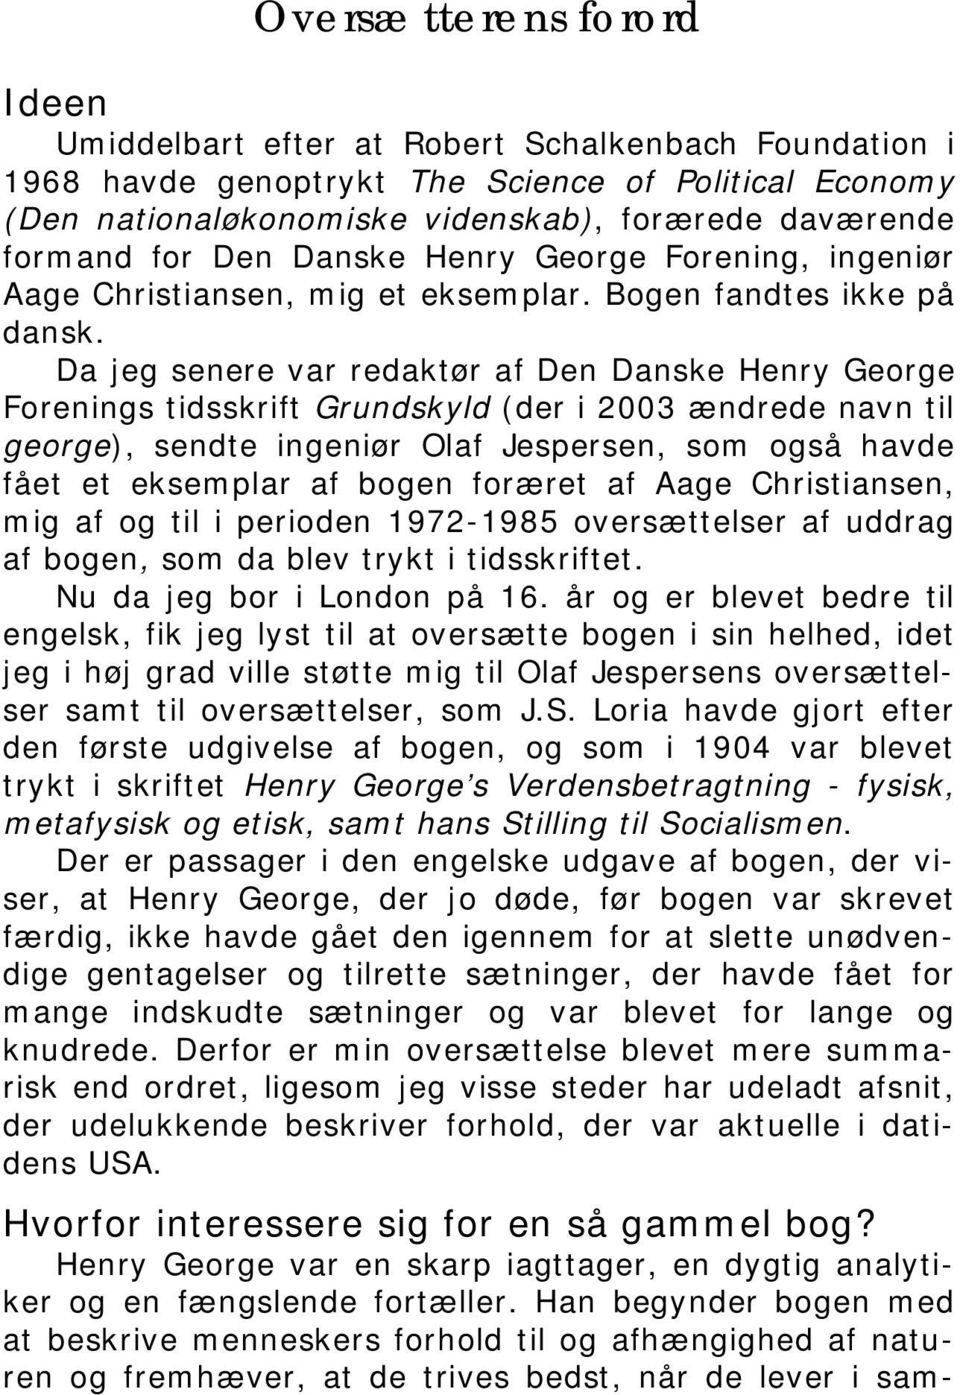 Da jeg senere var redaktør af Den Danske Henry George Forenings tidsskrift Grundskyld (der i 2003 ændrede navn til george), sendte ingeniør Olaf Jespersen, som også havde fået et eksemplar af bogen